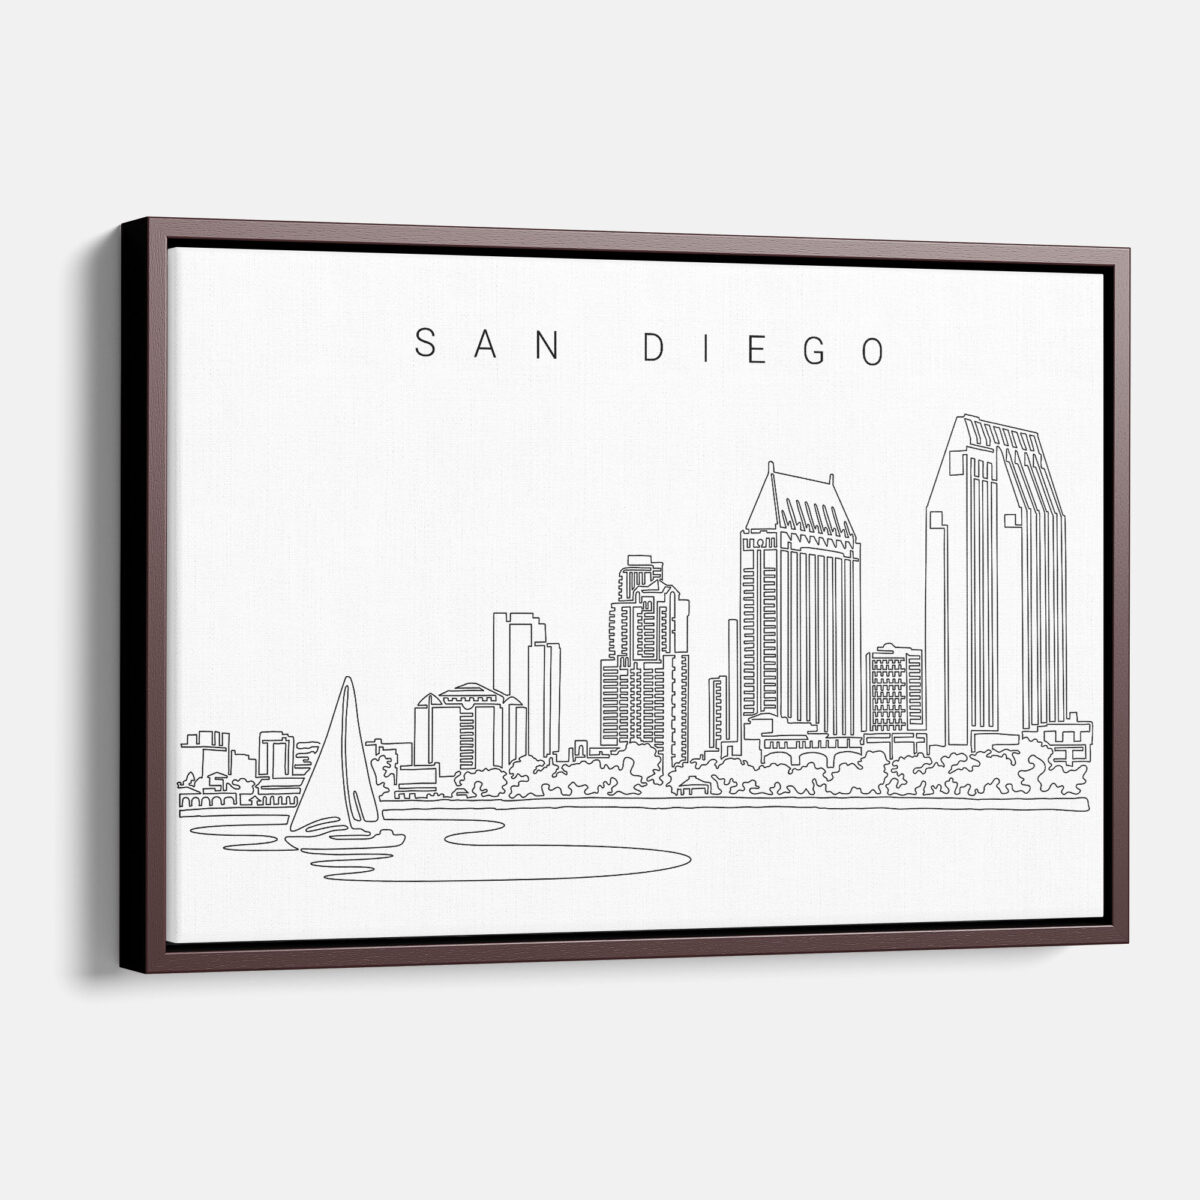 Framed San Diego Canvas Print - Main - Light